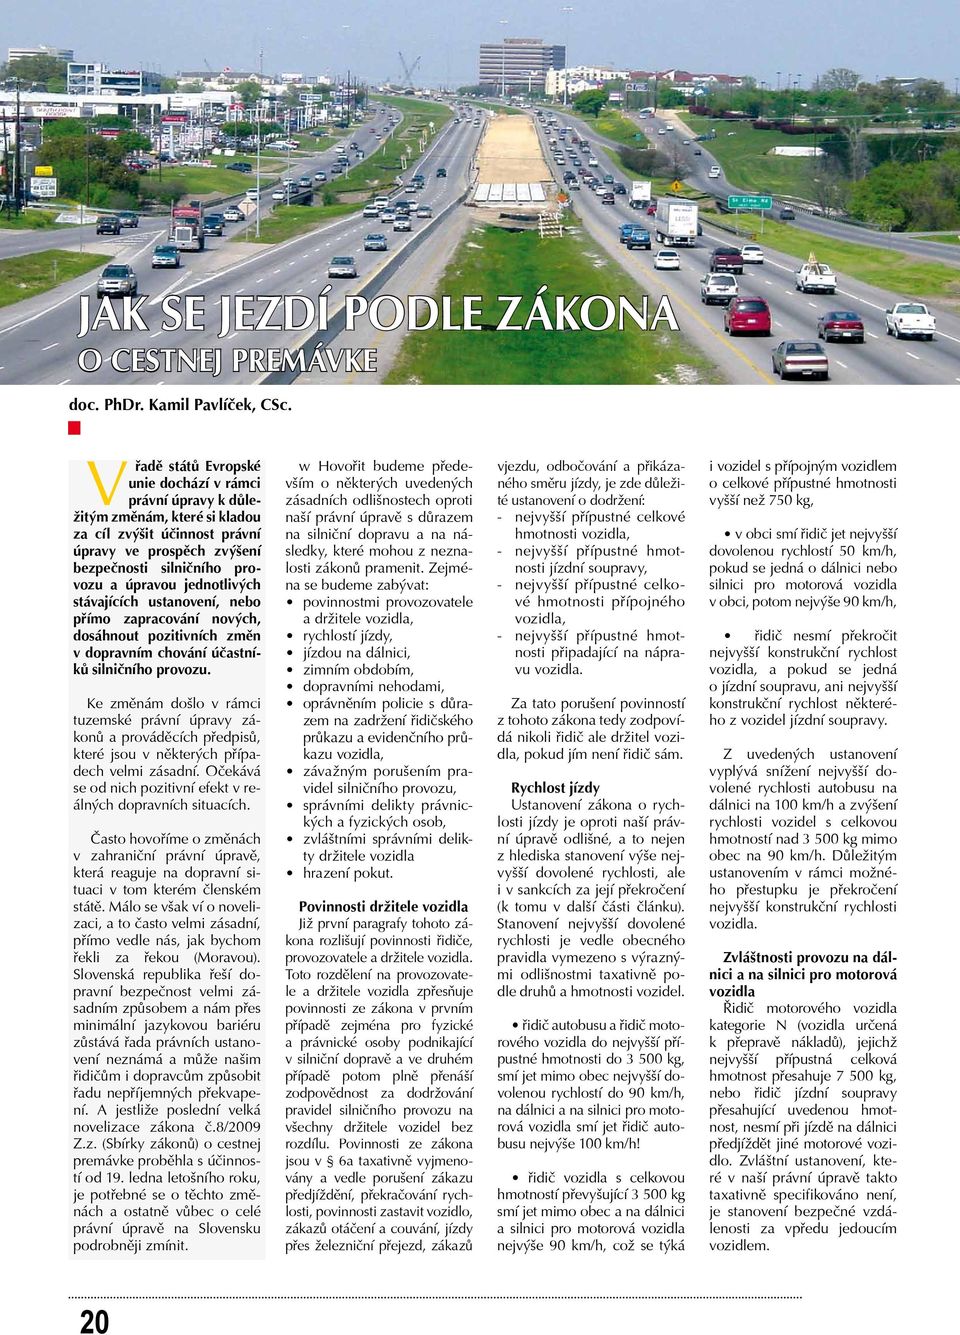 jednotlivých stávajících ustanovení, nebo přímo zapracování nových, dosáhnout pozitivních změn v dopravním chování účastníků silničního provozu.